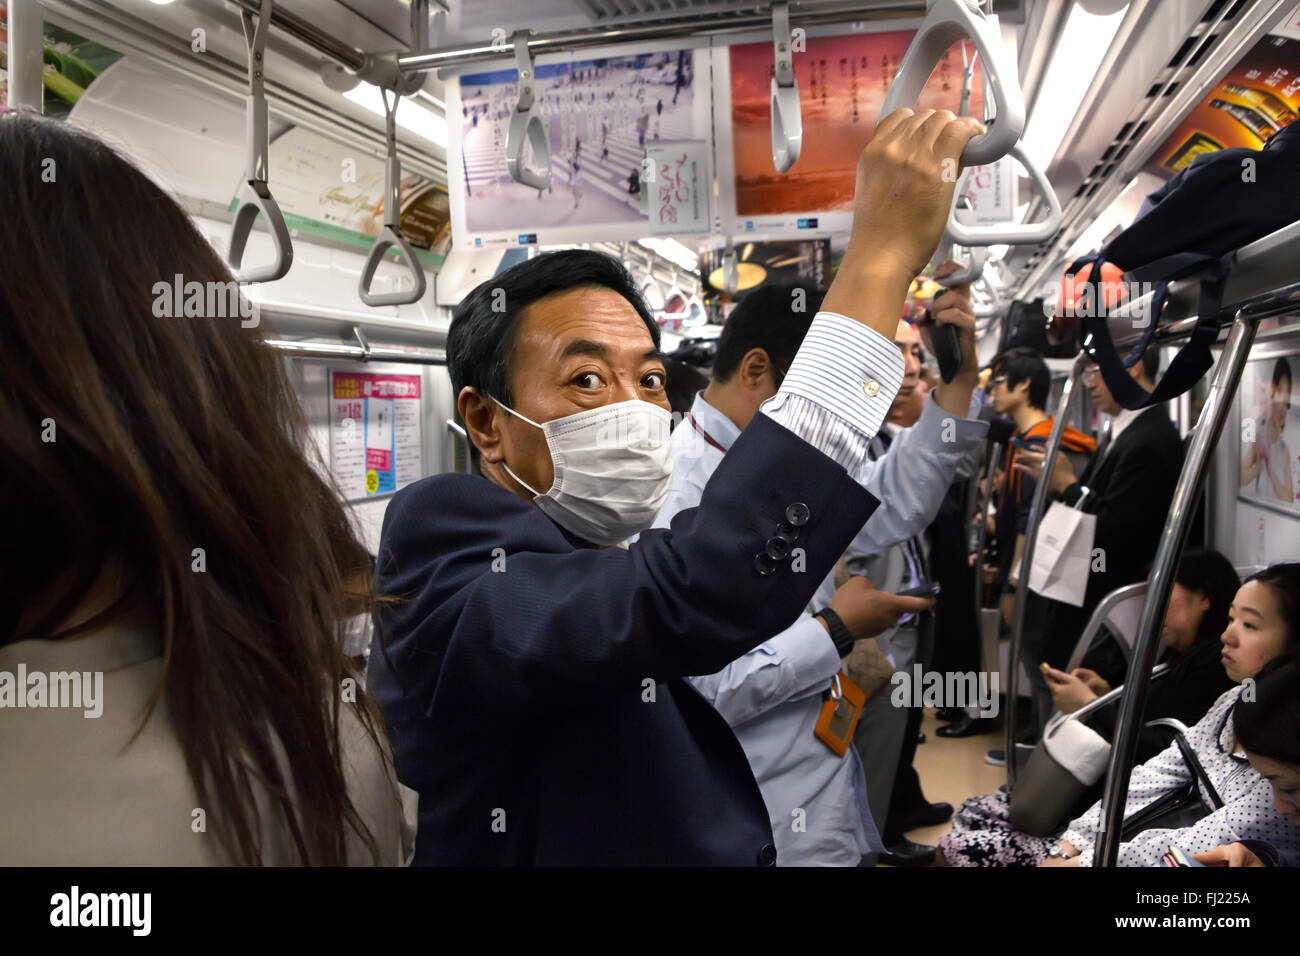 Business Mann mit Mundschutz in den frühen Morgen in der U-Bahn von Tokio, Japan Stockfoto